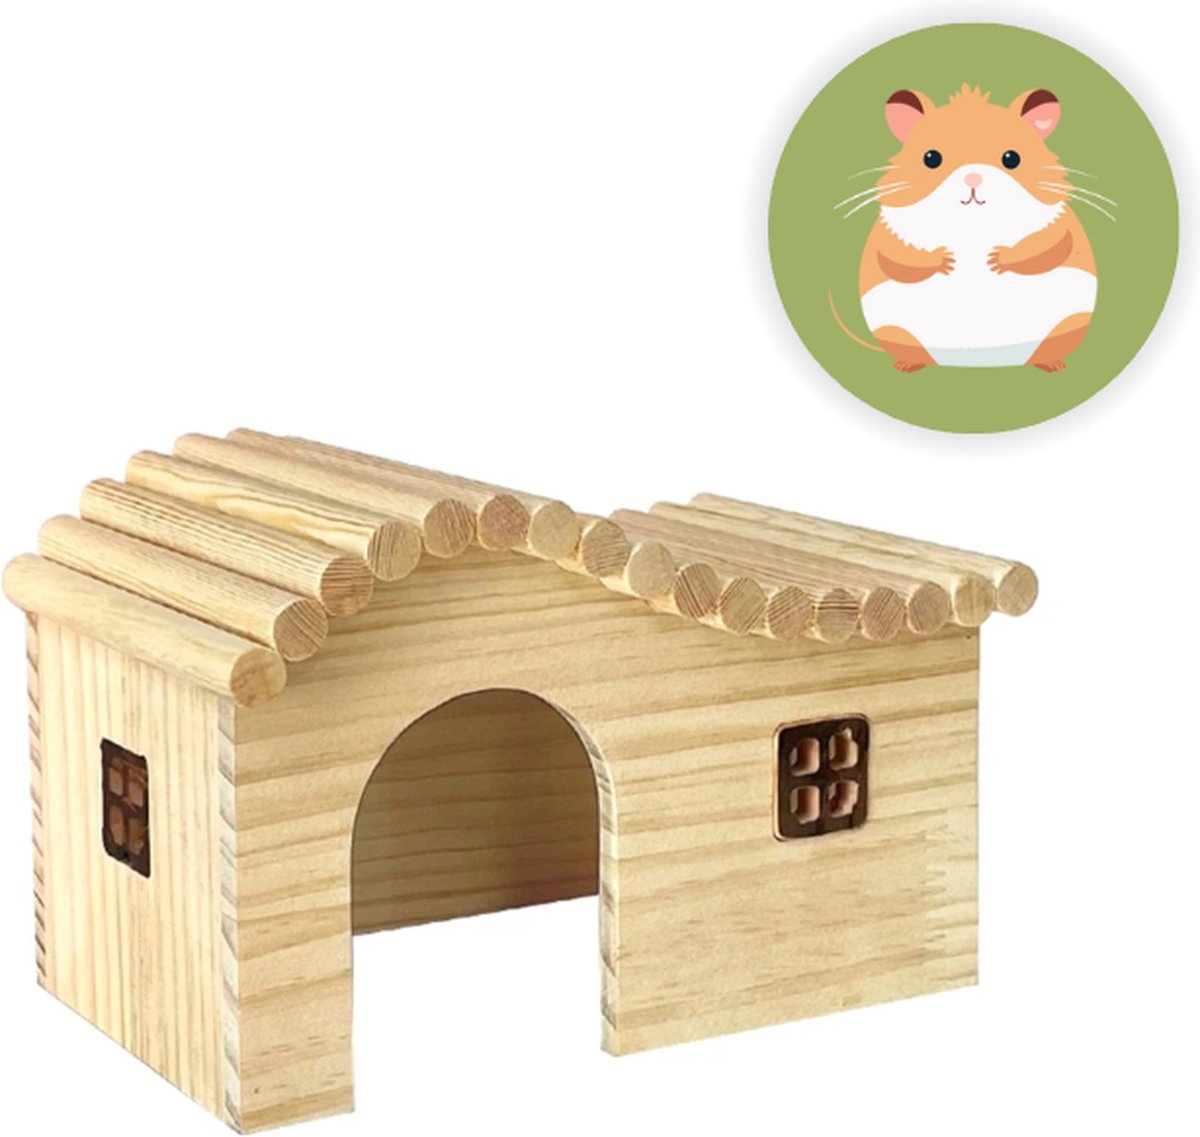 Hamster huisje - Hamsterkooi - Hamster huisje hout - Knaagdieren huisje